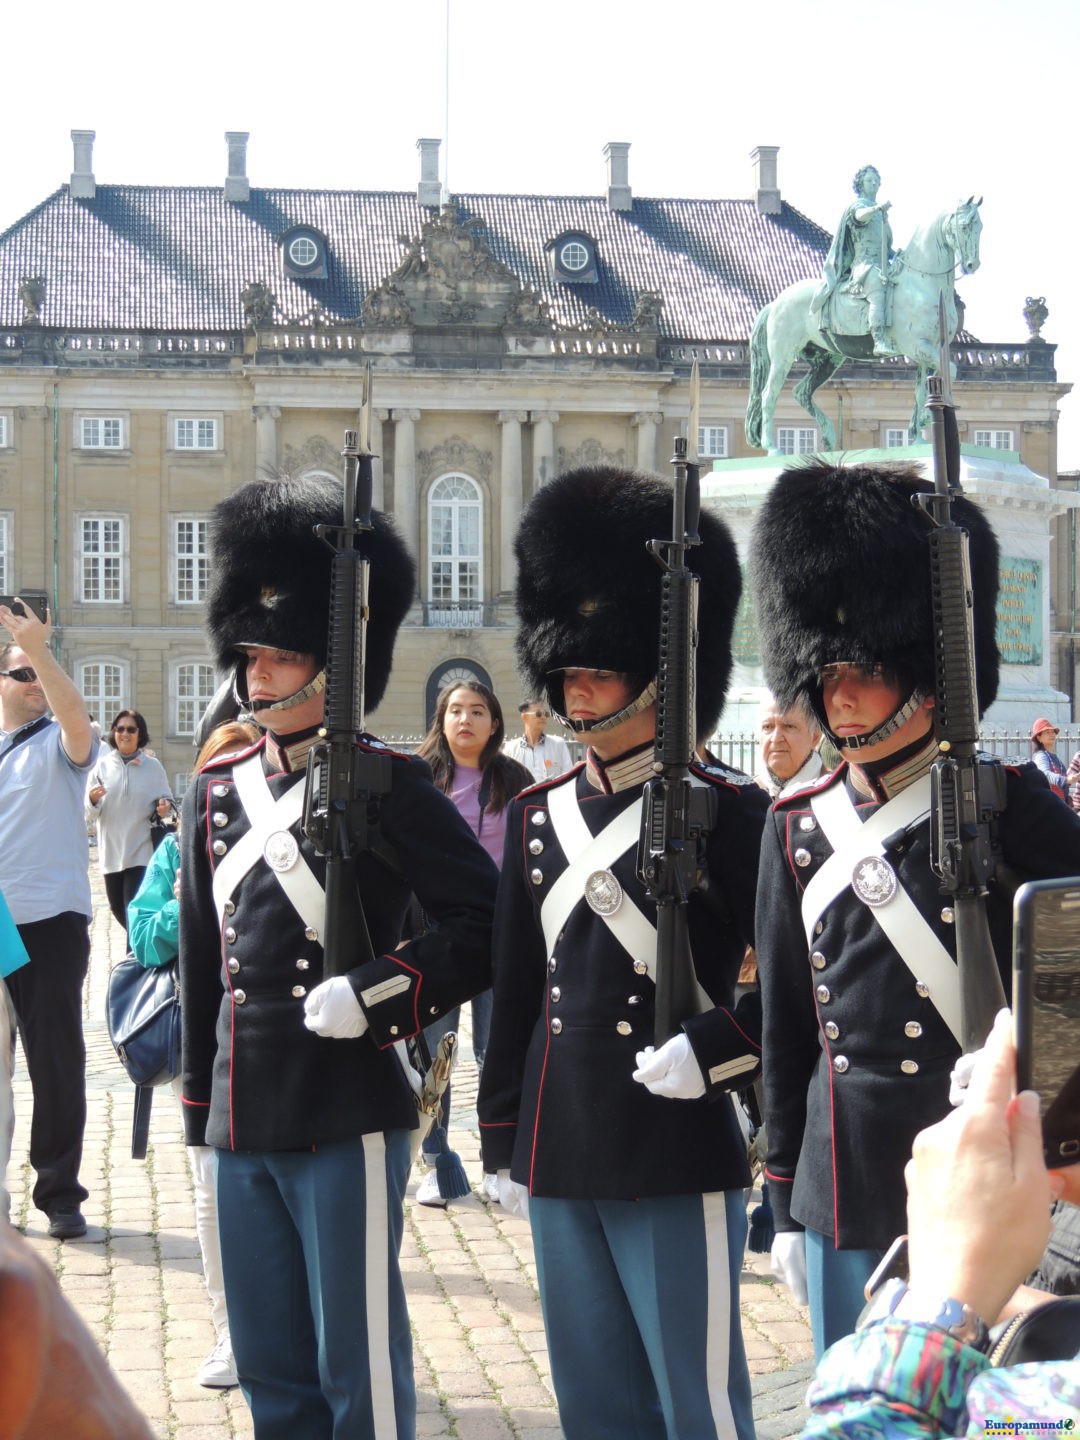 Guardia en el Palacio de Amalienborg-Copenhague